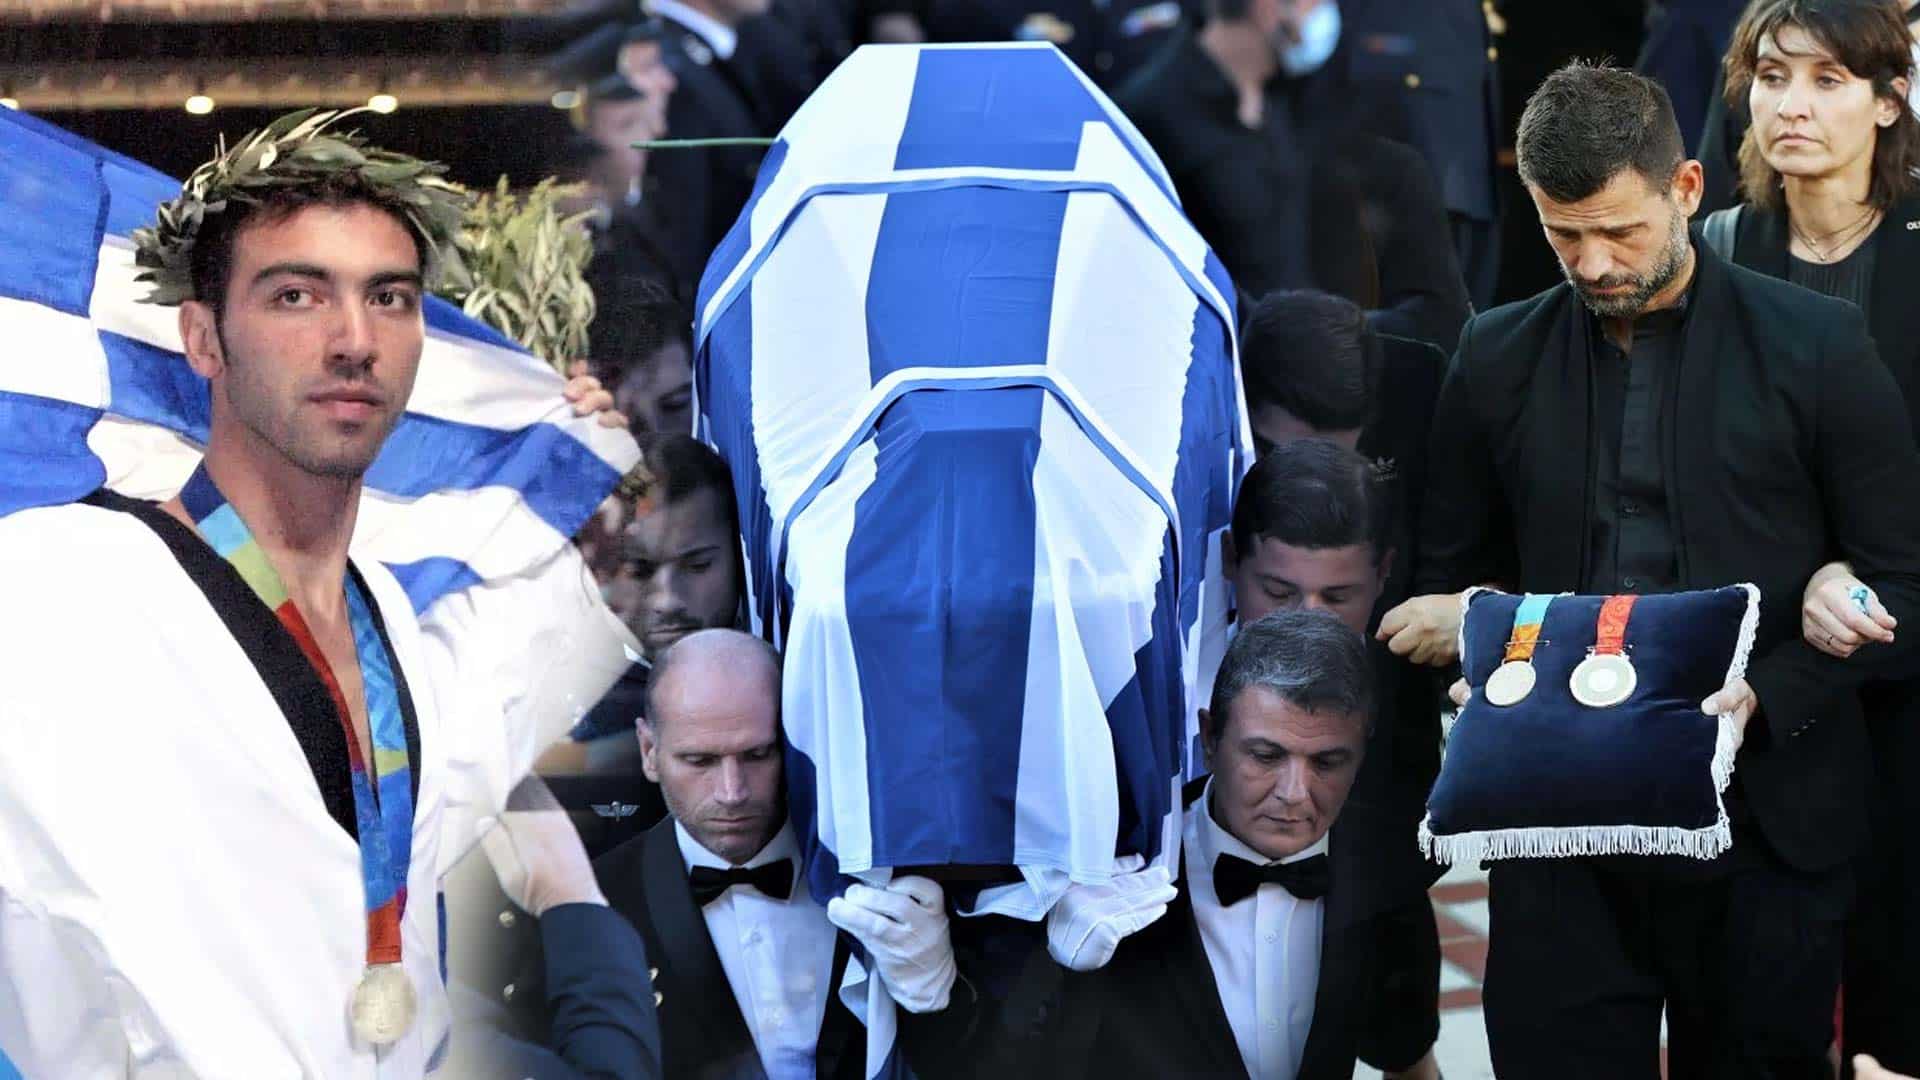 Αλέξανδρος Νικολαΐδης: Ράγισαν καρδιές στην κηδεία του - Ο Μουρούτσος μετέφερε τα Ολυμπιακά μετάλλιά του